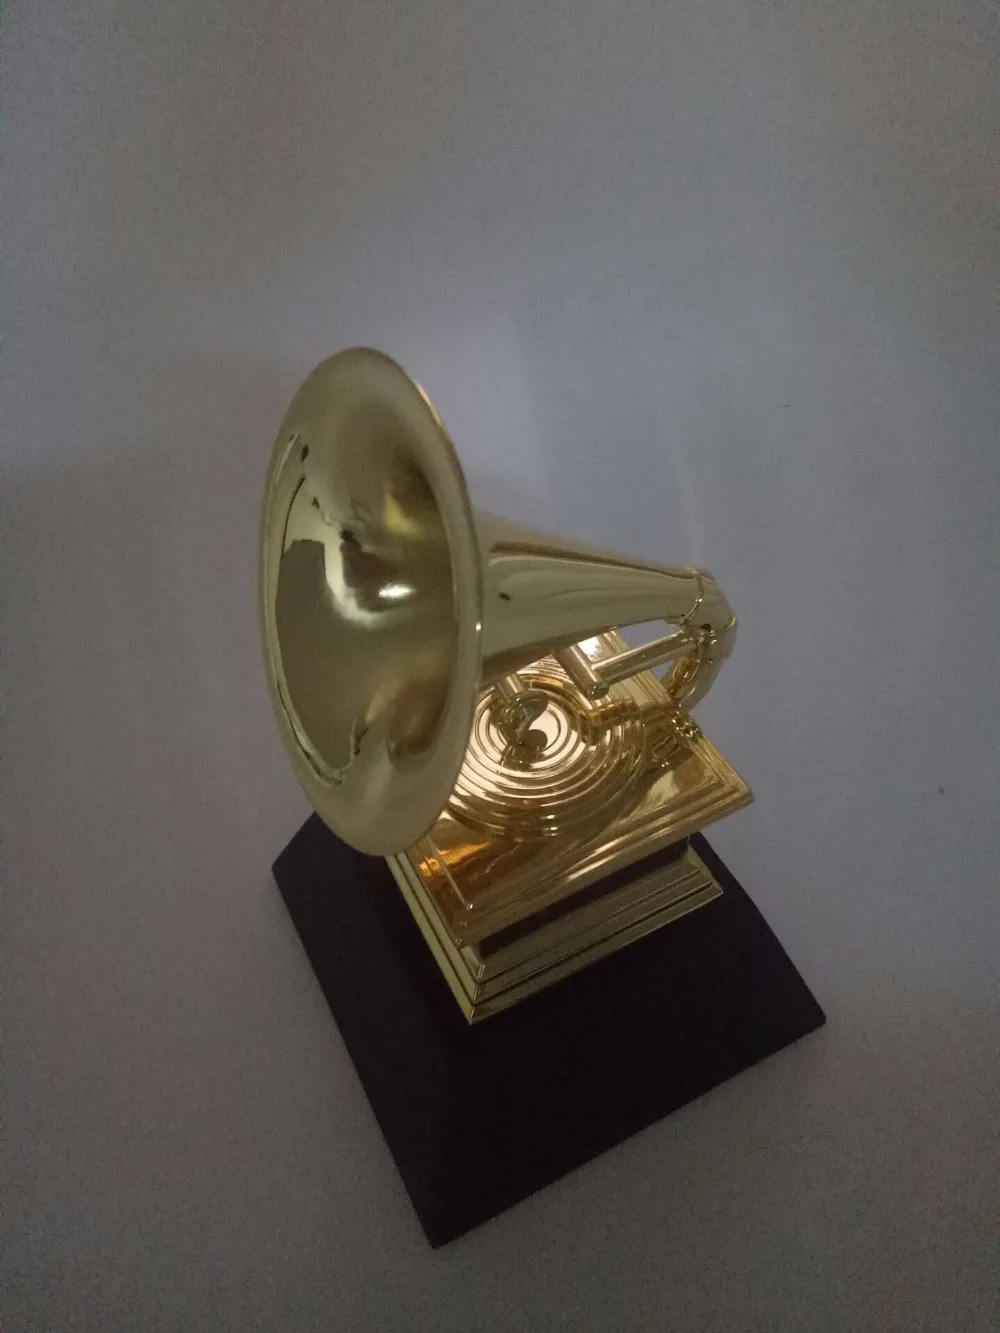 1:1 реальный размер реплика Статуэтка Грэмми высота 18 см музыка сувенирная награда